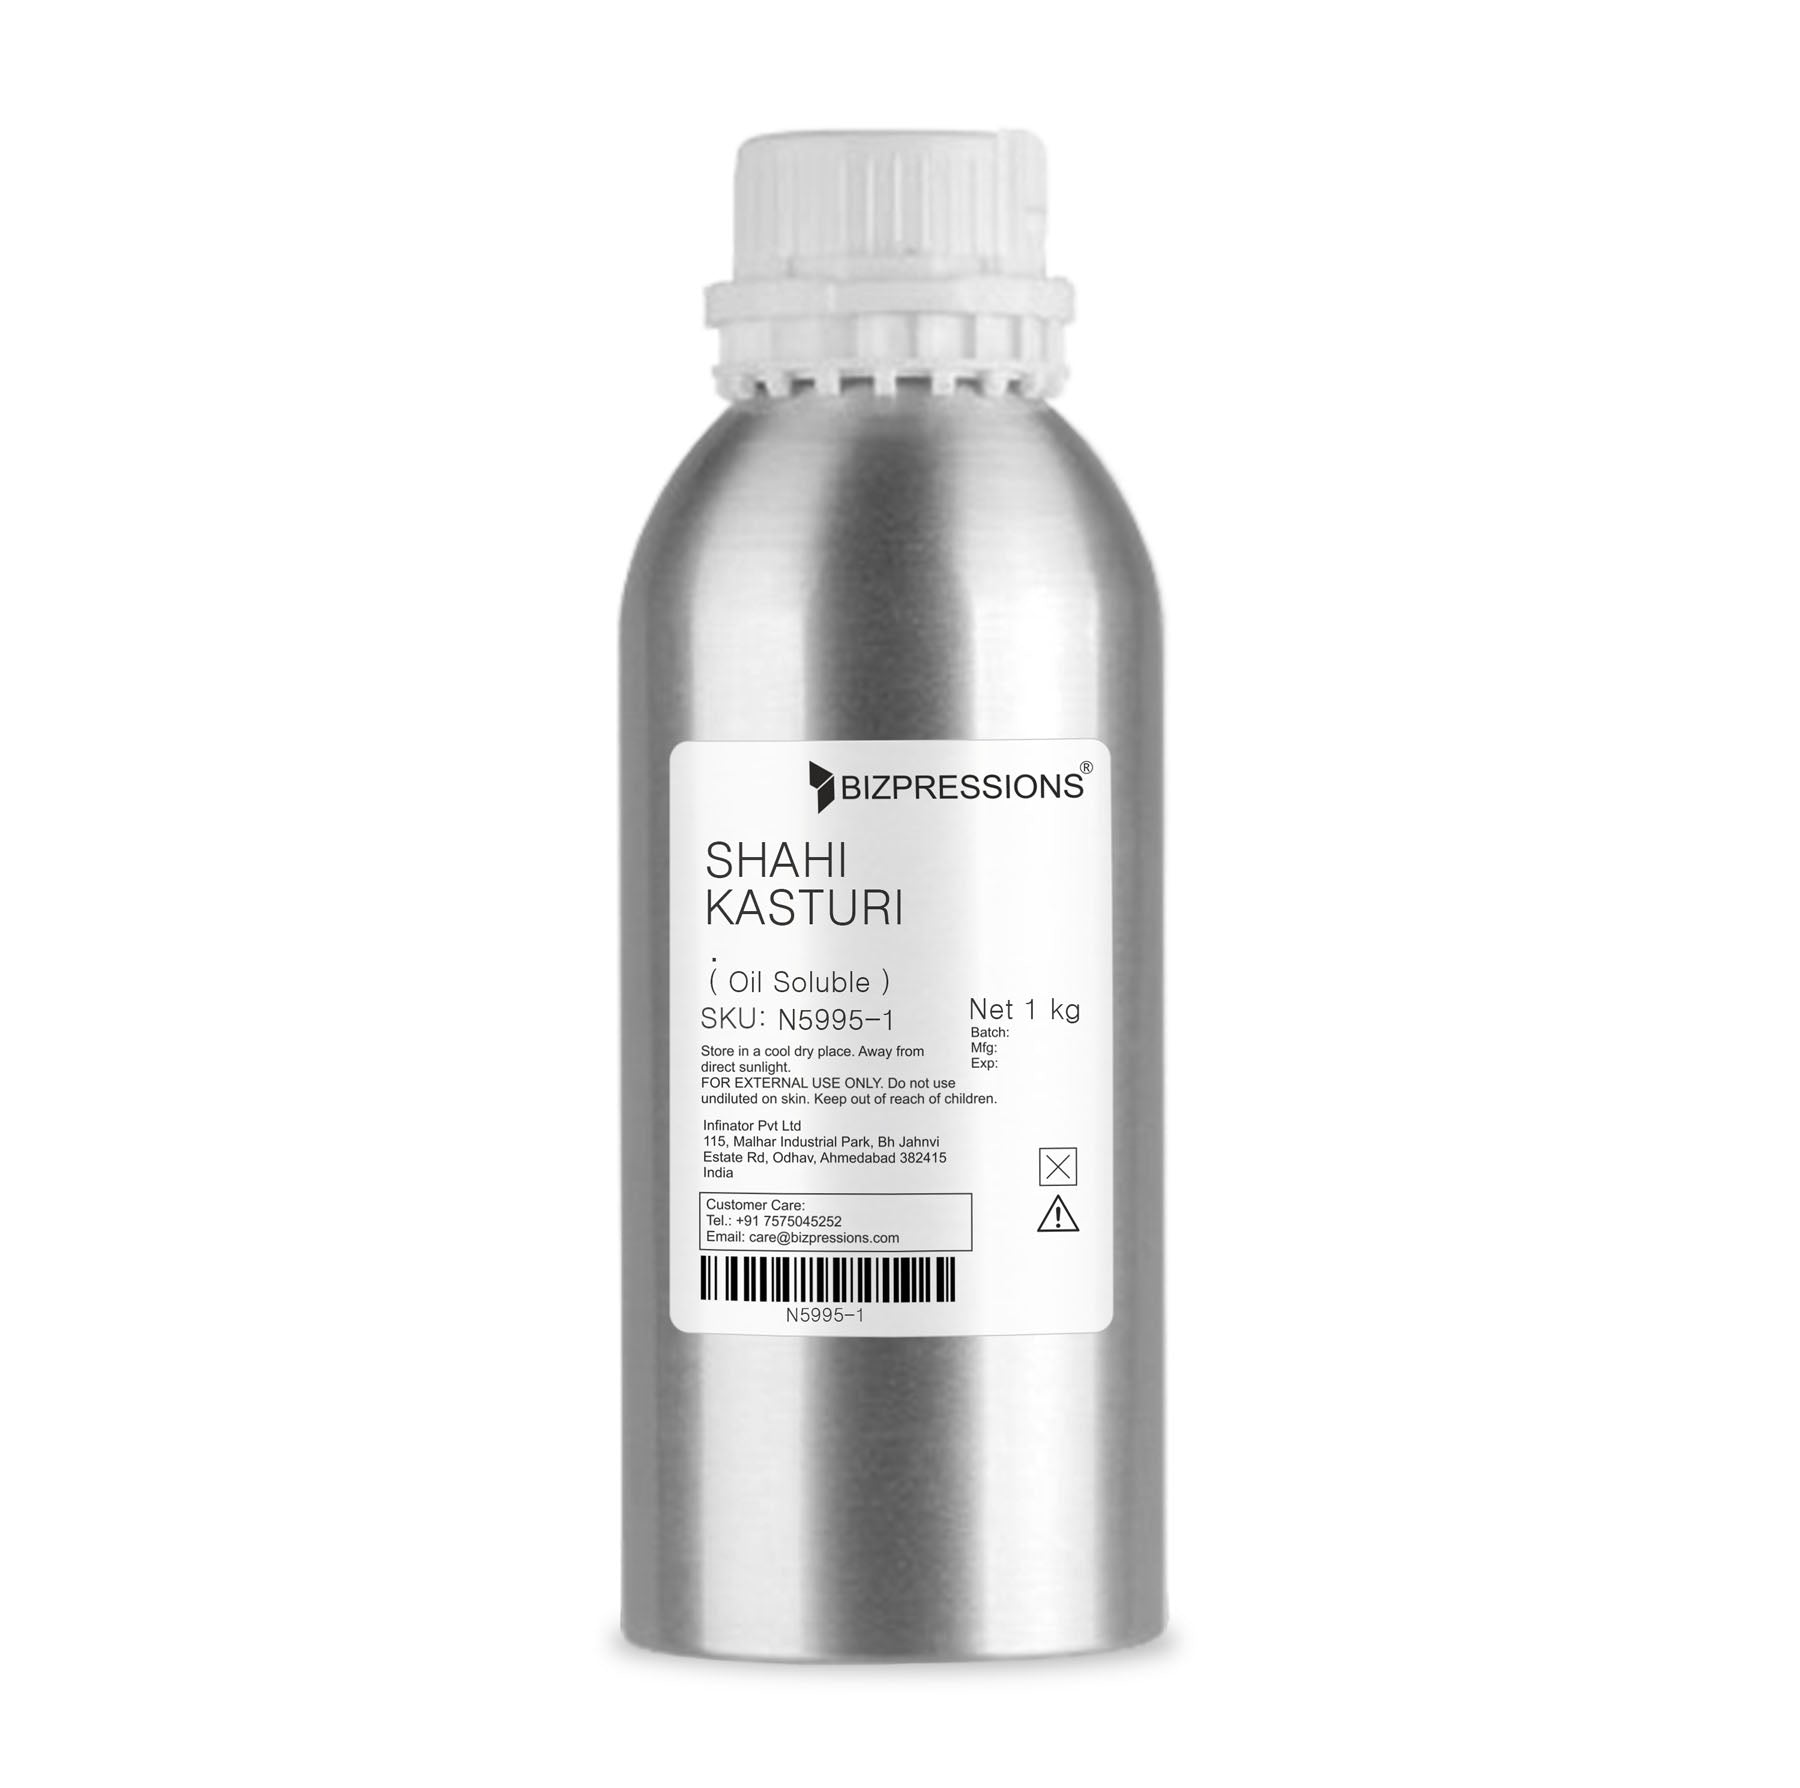 SHAHI KASTURI - Fragrance ( Oil Soluble ) - 1 kg